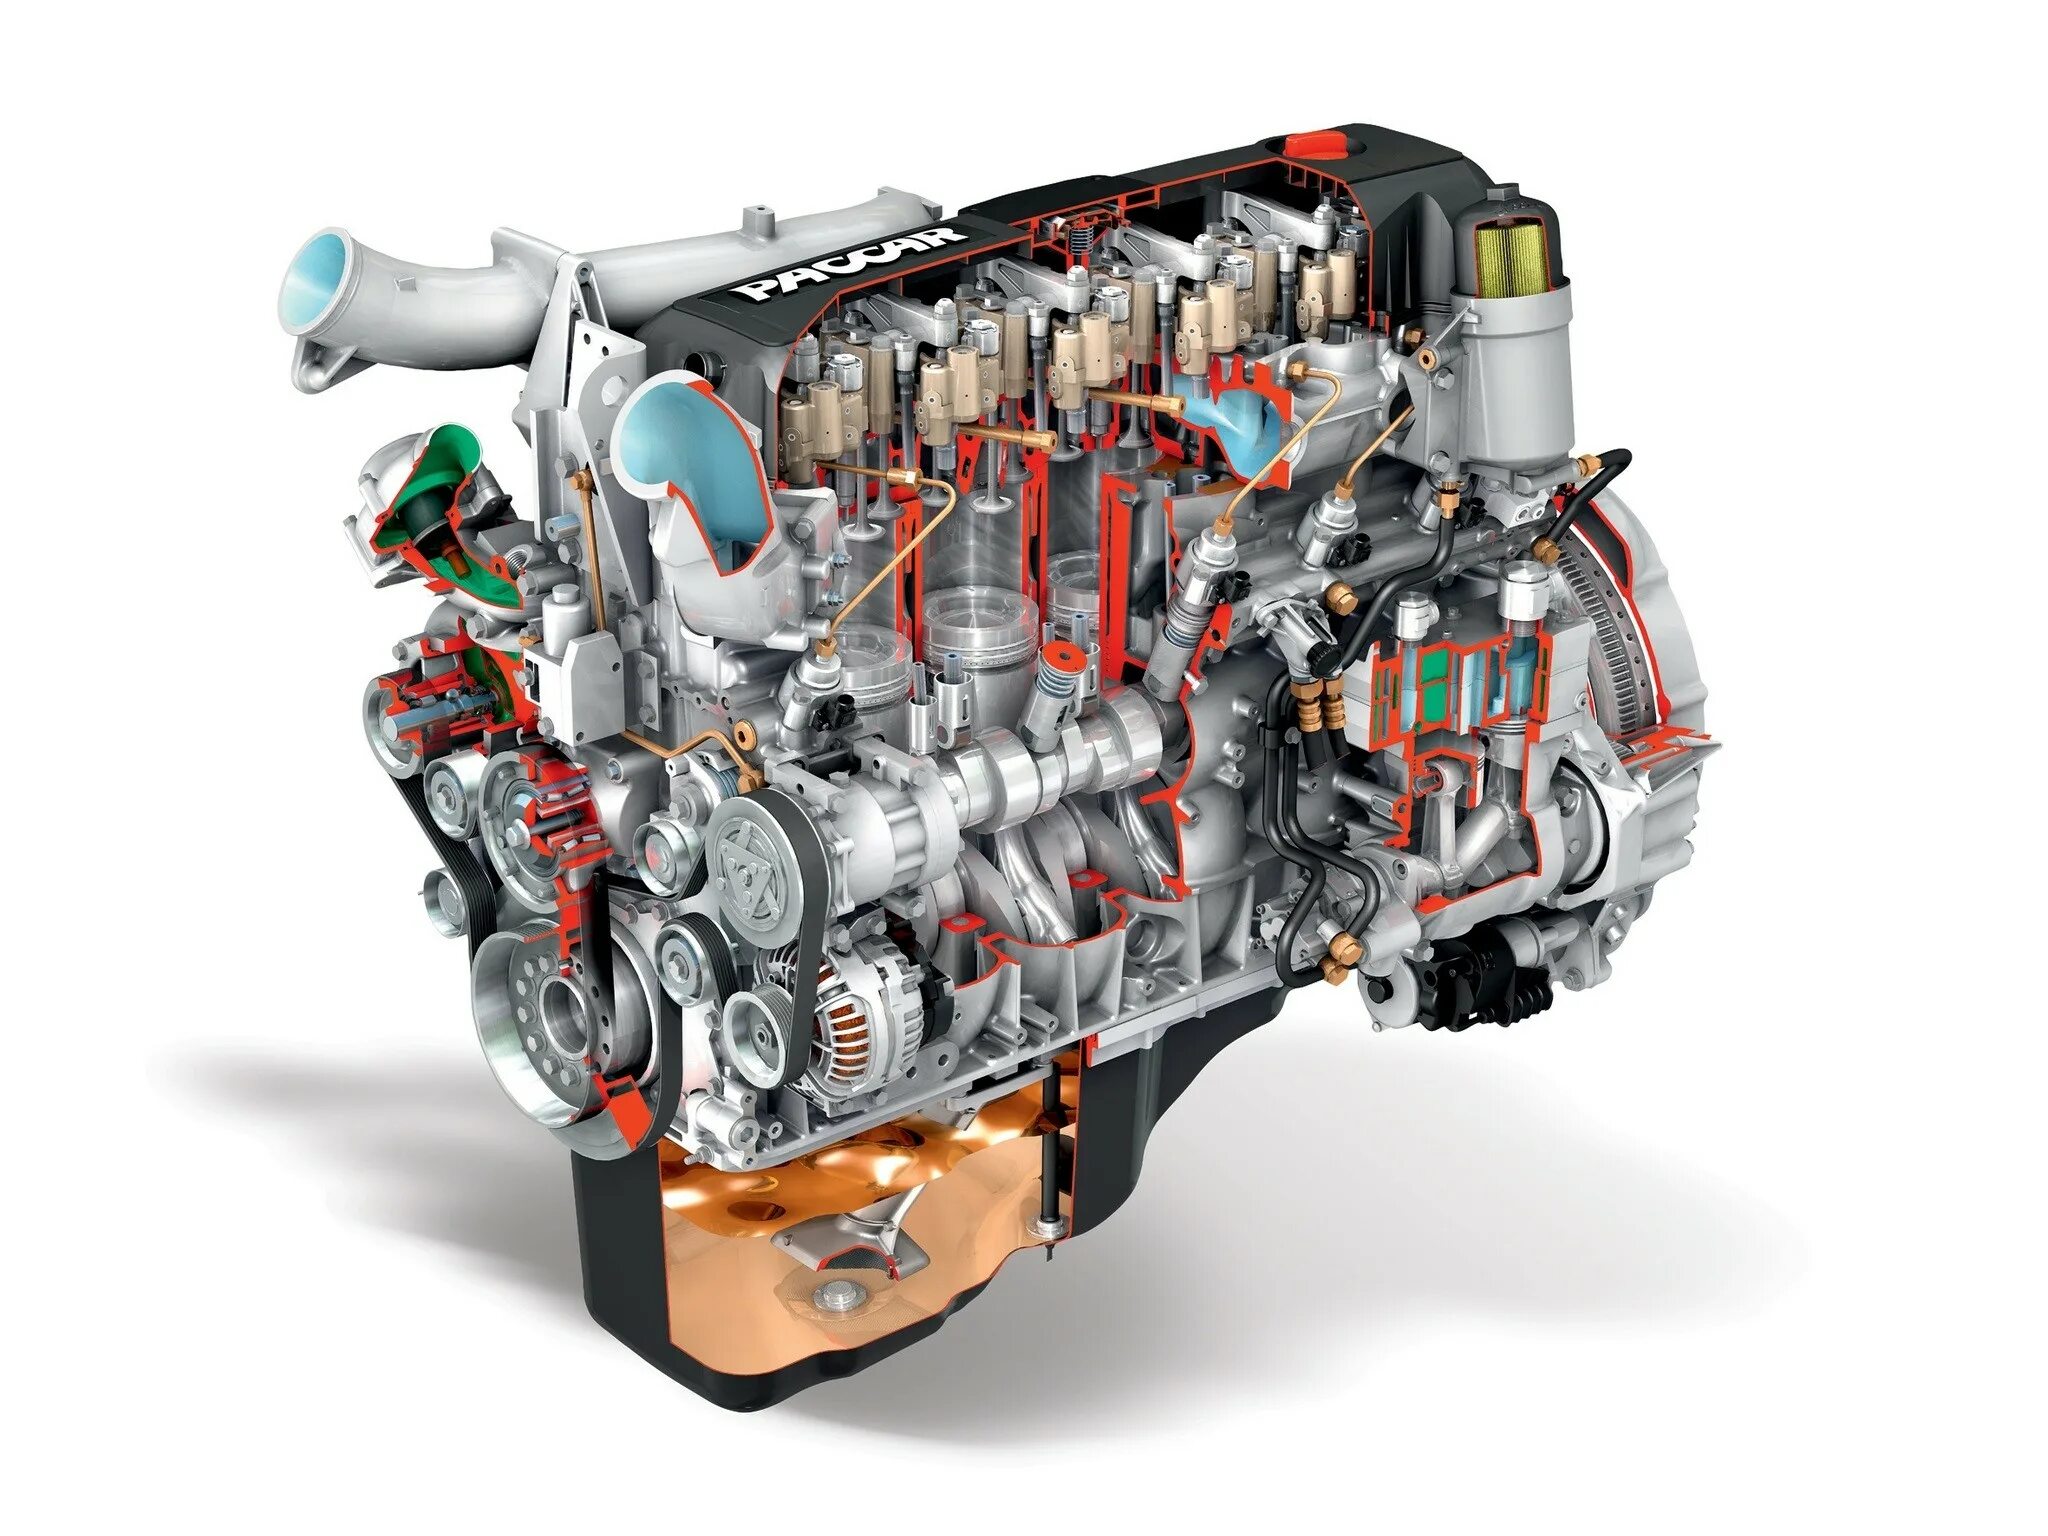 Двигатель man Diesel & Turbo” s35mc. ДВС Paccar. Cummins c300 двигатель. Дизельный двигатель внутреннего сгорания.